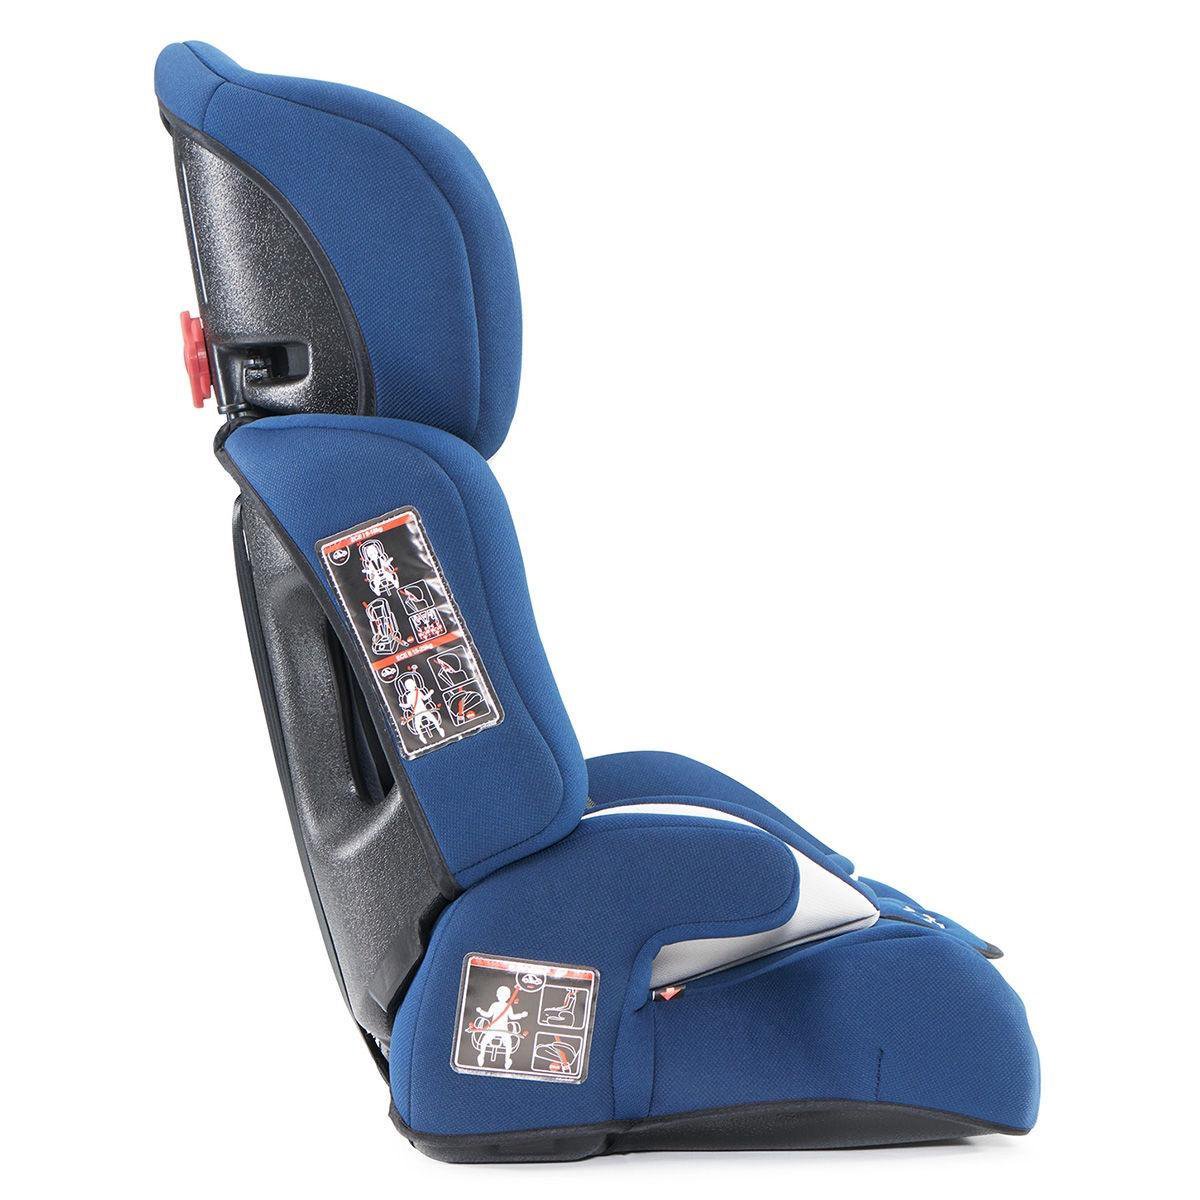 Kinderkraft Autostoel Comfort Up - Navy - Blauw